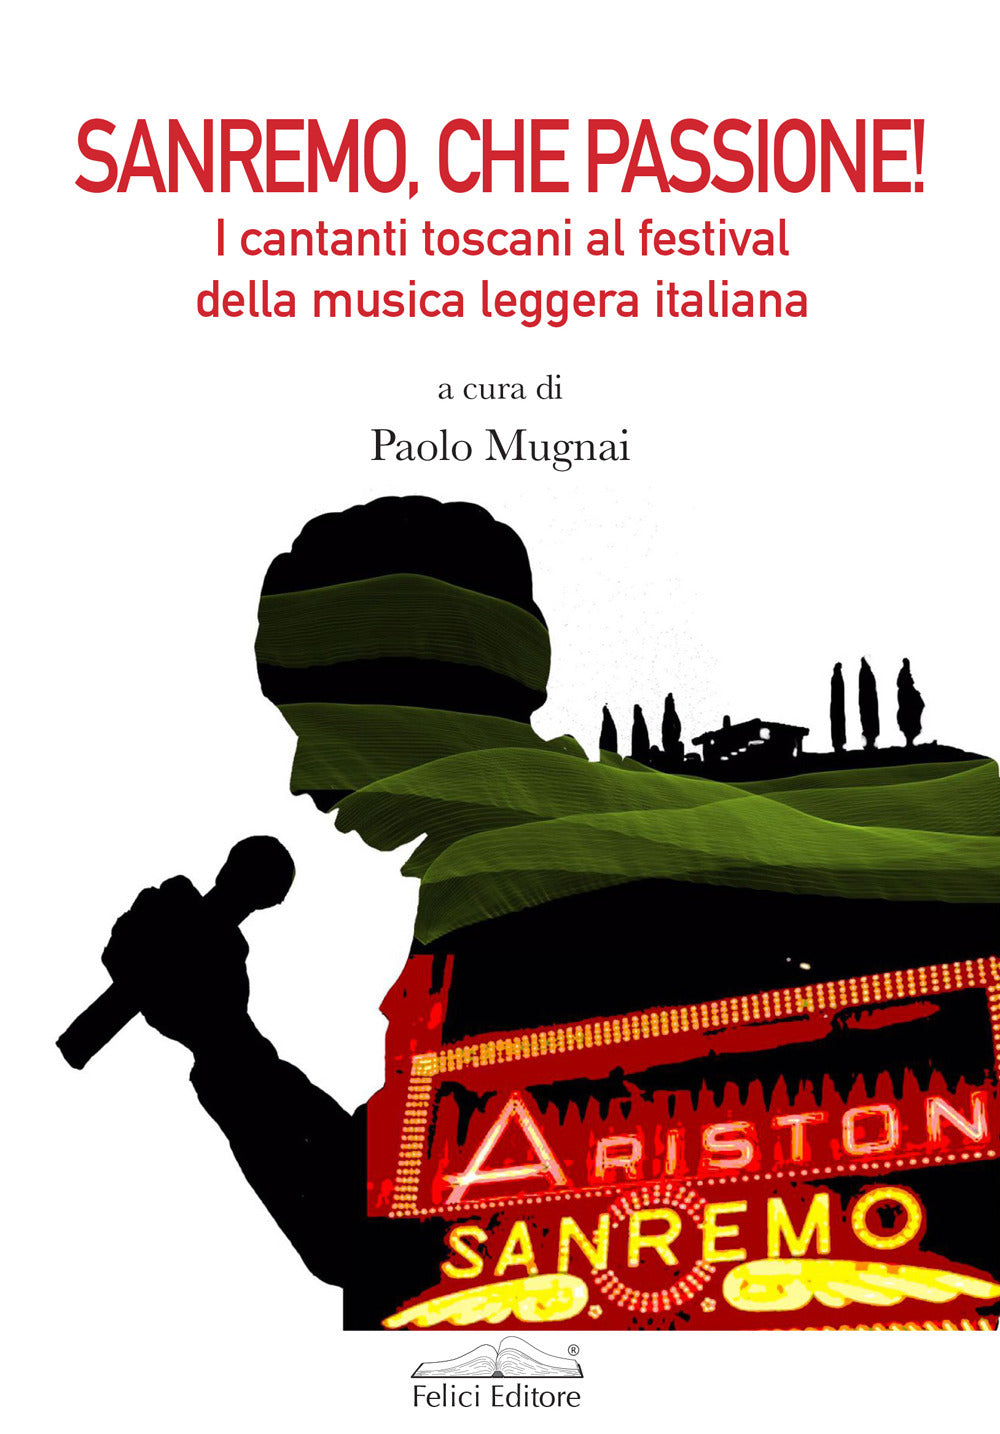 Sanremo, che passione! I cantanti toscani al Festival della musica leggera italiana.